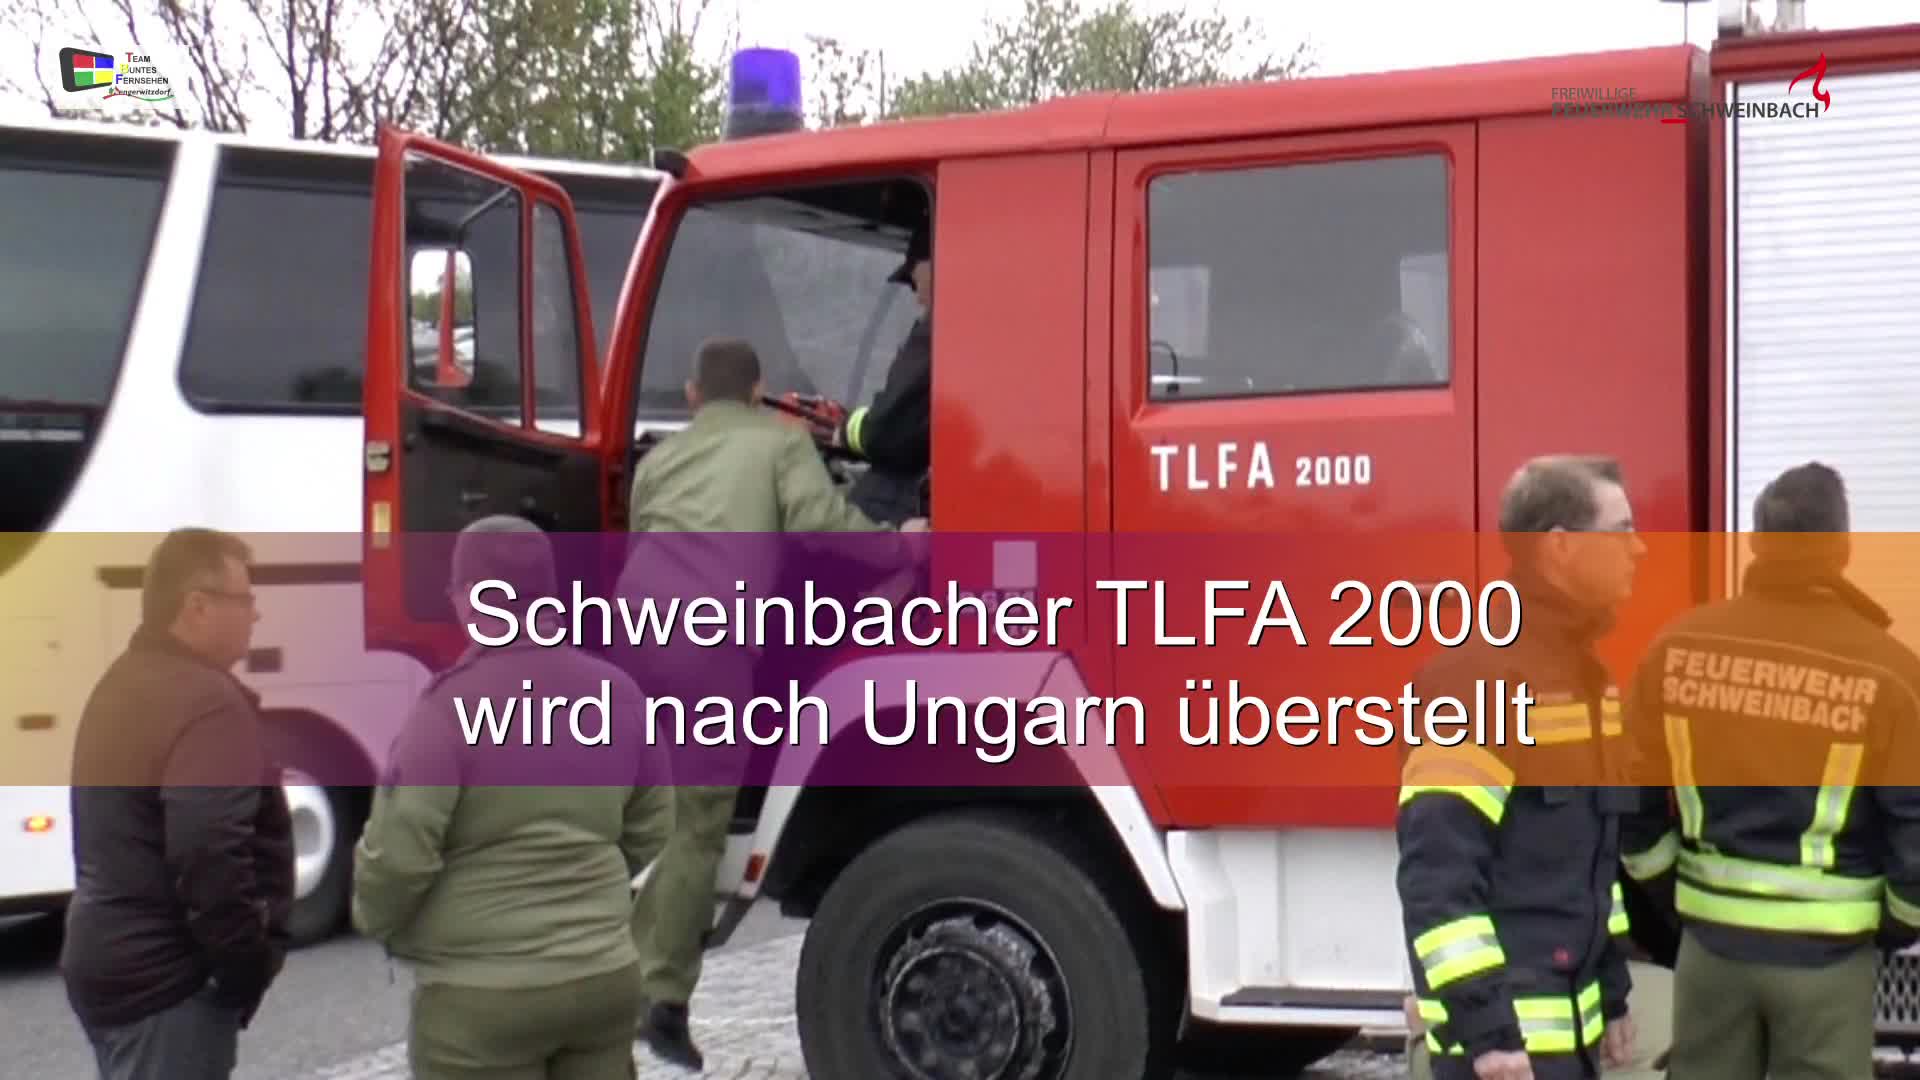 TLFA 2000 v. Schweinbach n. Ungarn überstellt